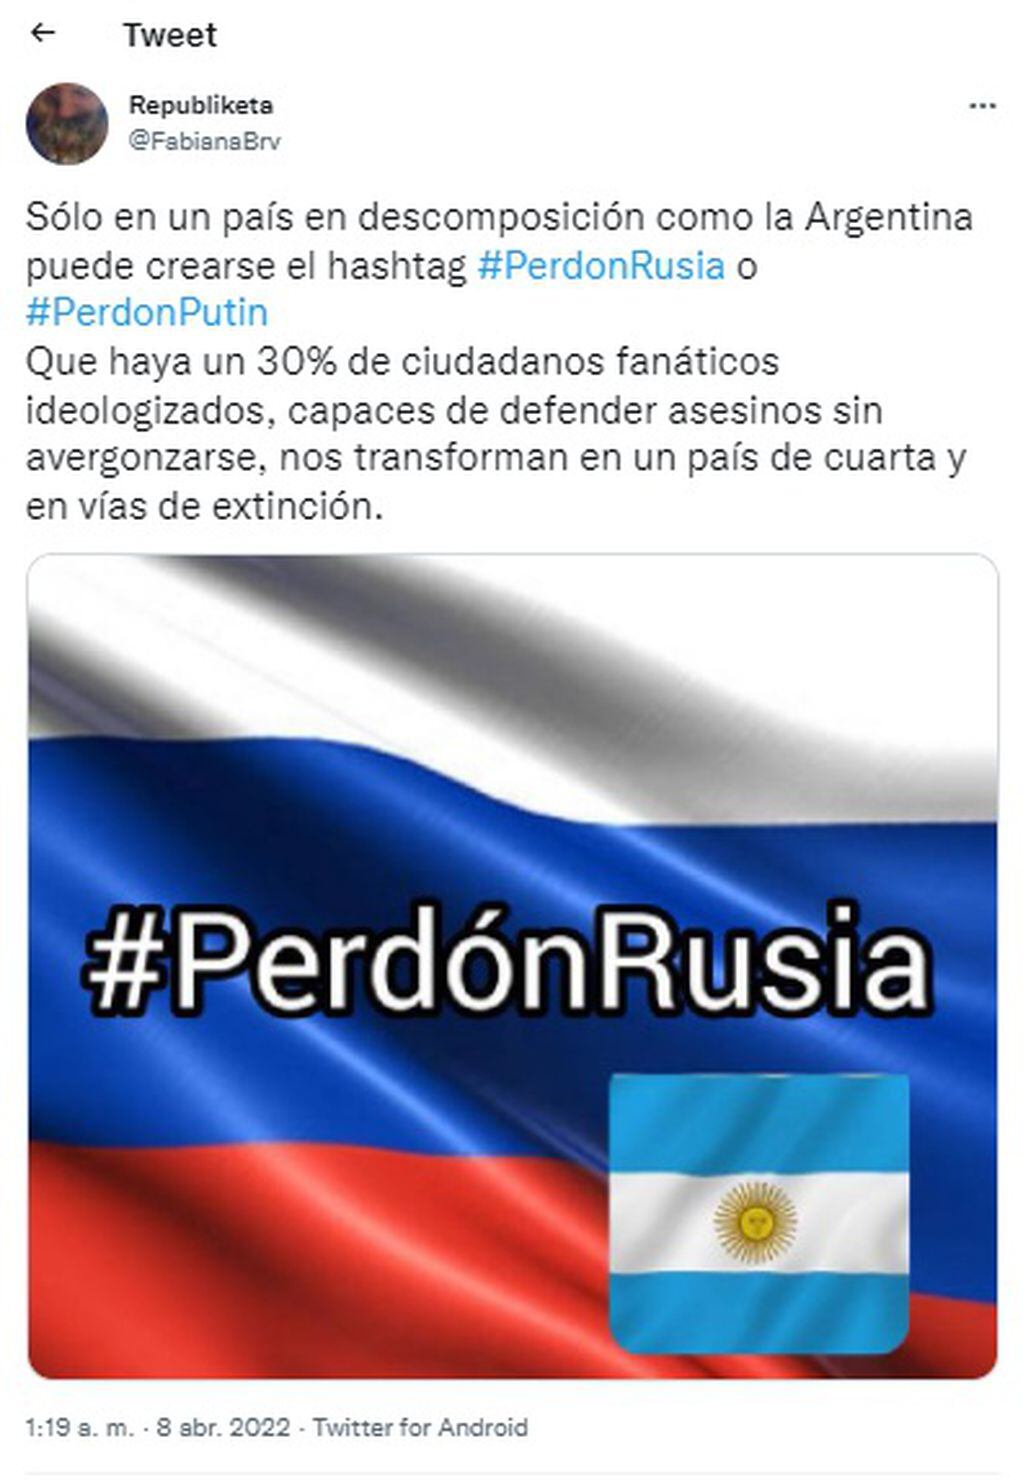 "Perdón Rusia" es tendencia en Twitter luego de que Argentina votara a favor de expulsar a Rusia en la Asamblea General de la ONU. Algunos usuarios repudian esta tendencia. 